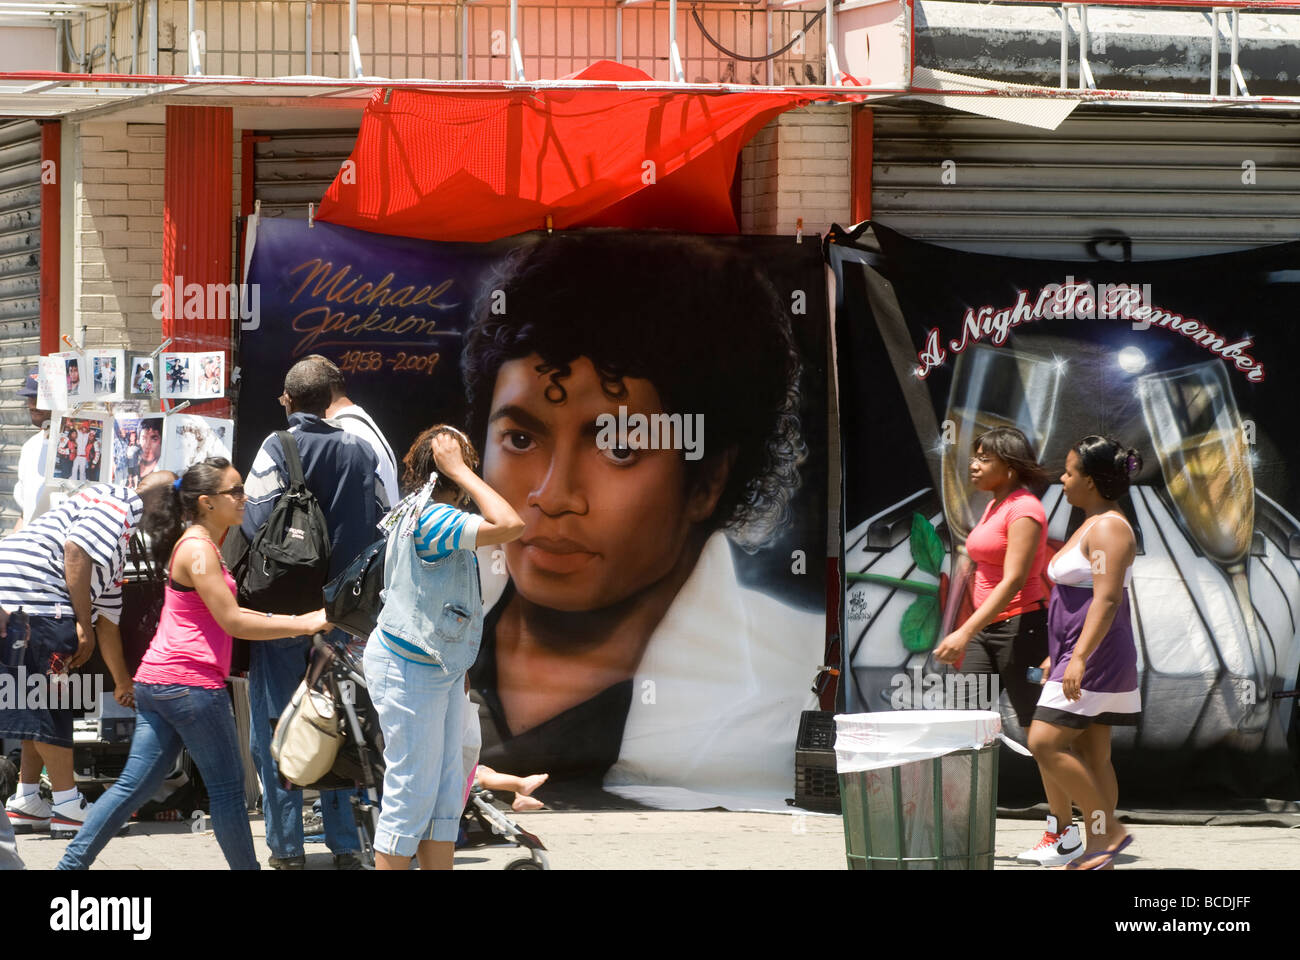 Michael Jackson-Utensilien vor dem Apollo Theater in Harlem in New York für ein Denkmal Stockfoto